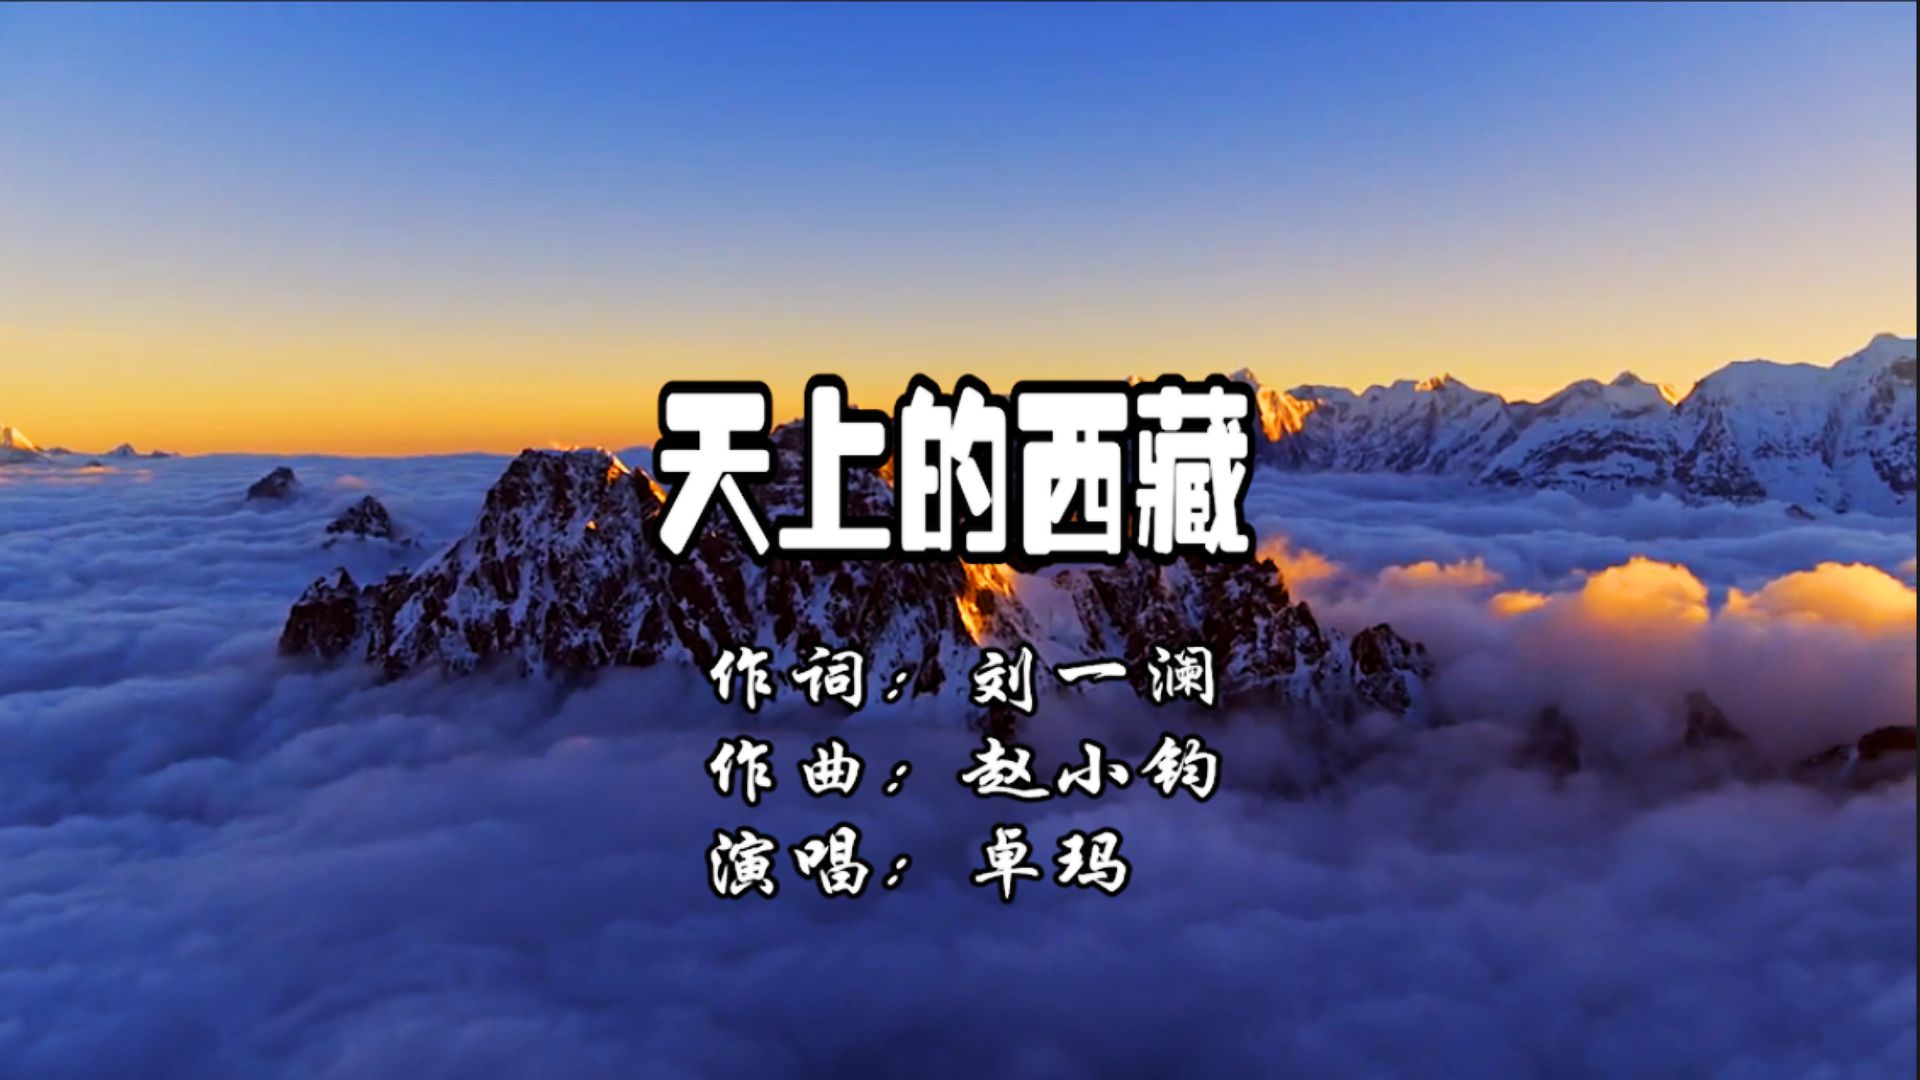 卓玛演唱一首《天上的西藏》经典歌曲,深情演唱,天籁之音,歌曲完整版